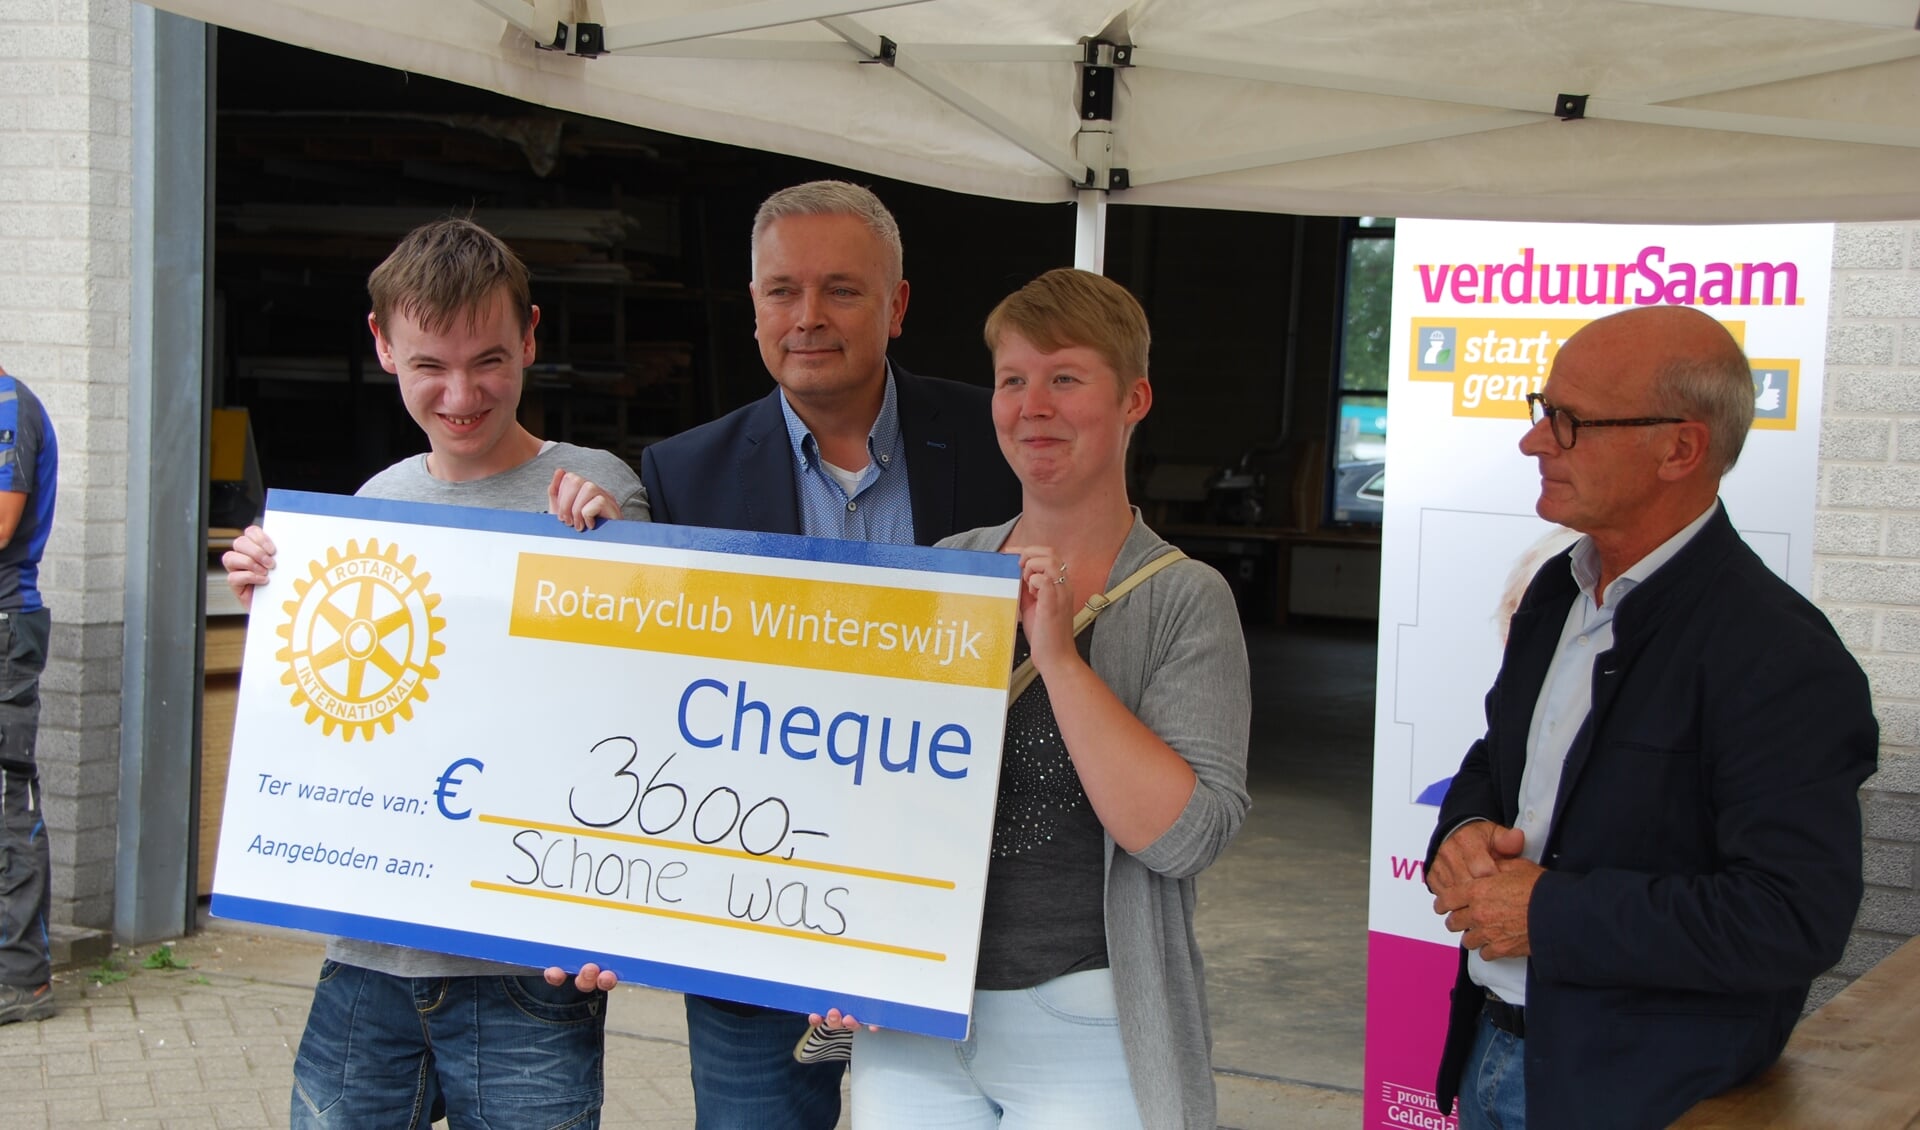 De cheque wordt overhandigd aan medewerkenden aan het project Schone Was. Foto: PR